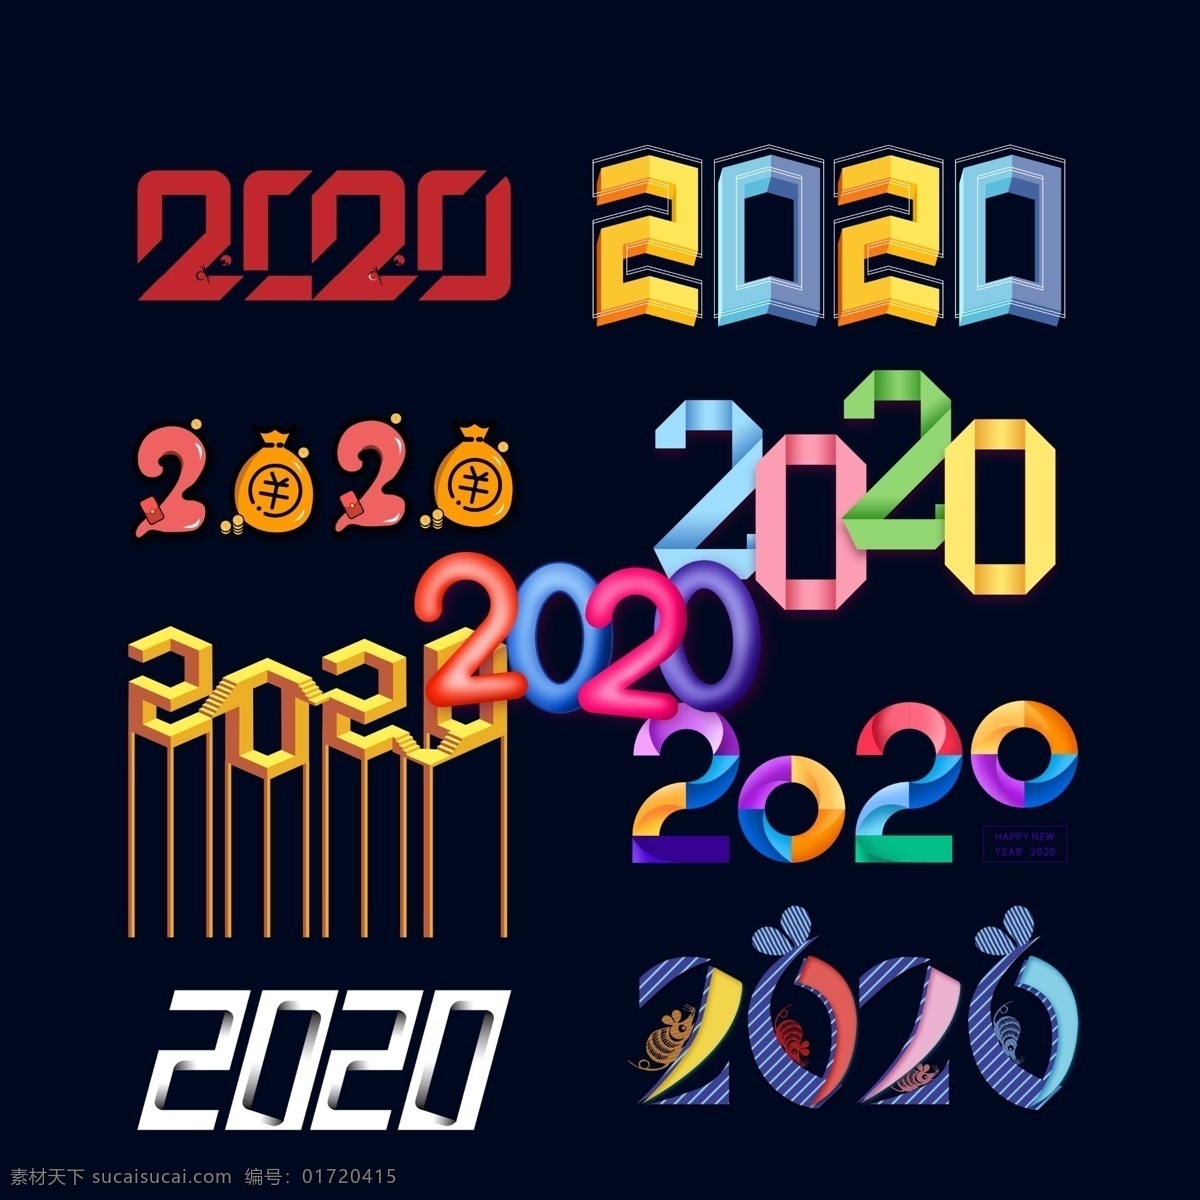 鼠年字体 鼠年字体设计 鼠年书法字体 鼠年金色字体 鼠年素材 新年字体 元旦字体 春节字体 透明鼠年字体 透明春节字体 鼠年 字体 创意鼠年字体 2020 透明 创意 恭喜发财字体 春节素材 新年素材 png元素 分层